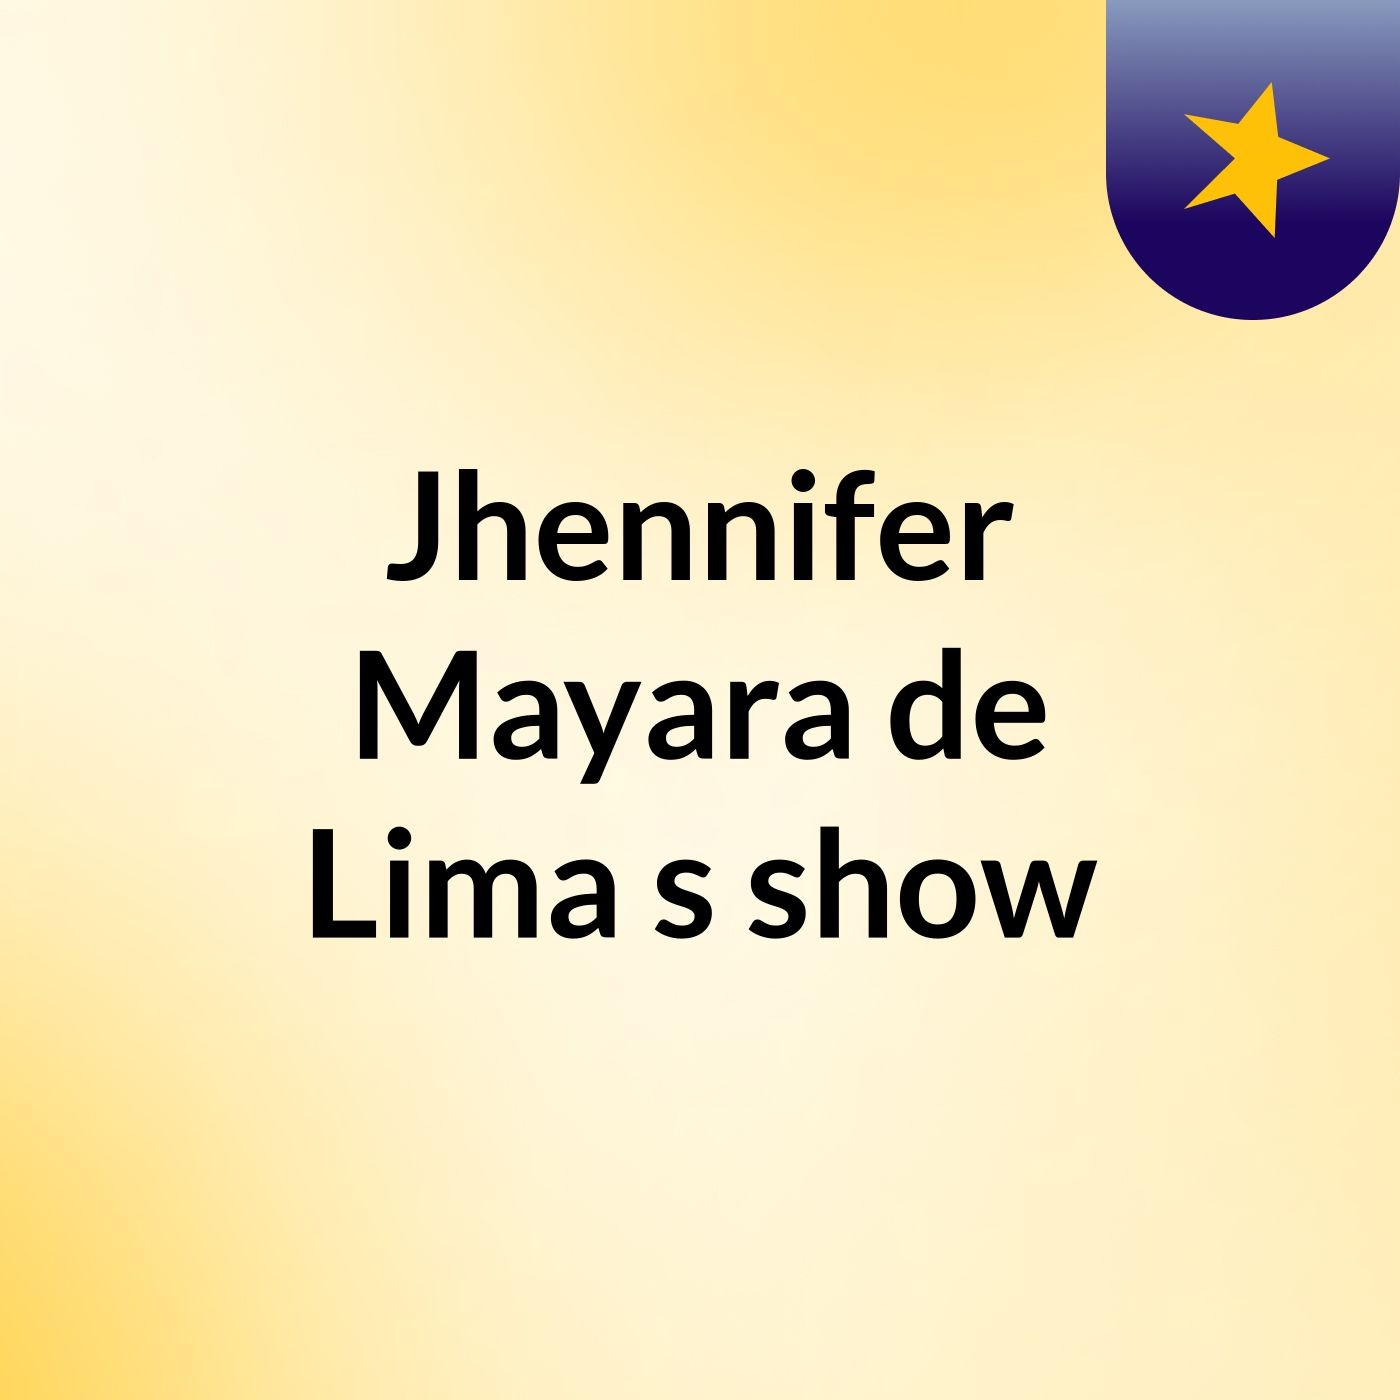 Jhennifer Mayara de Lima's show